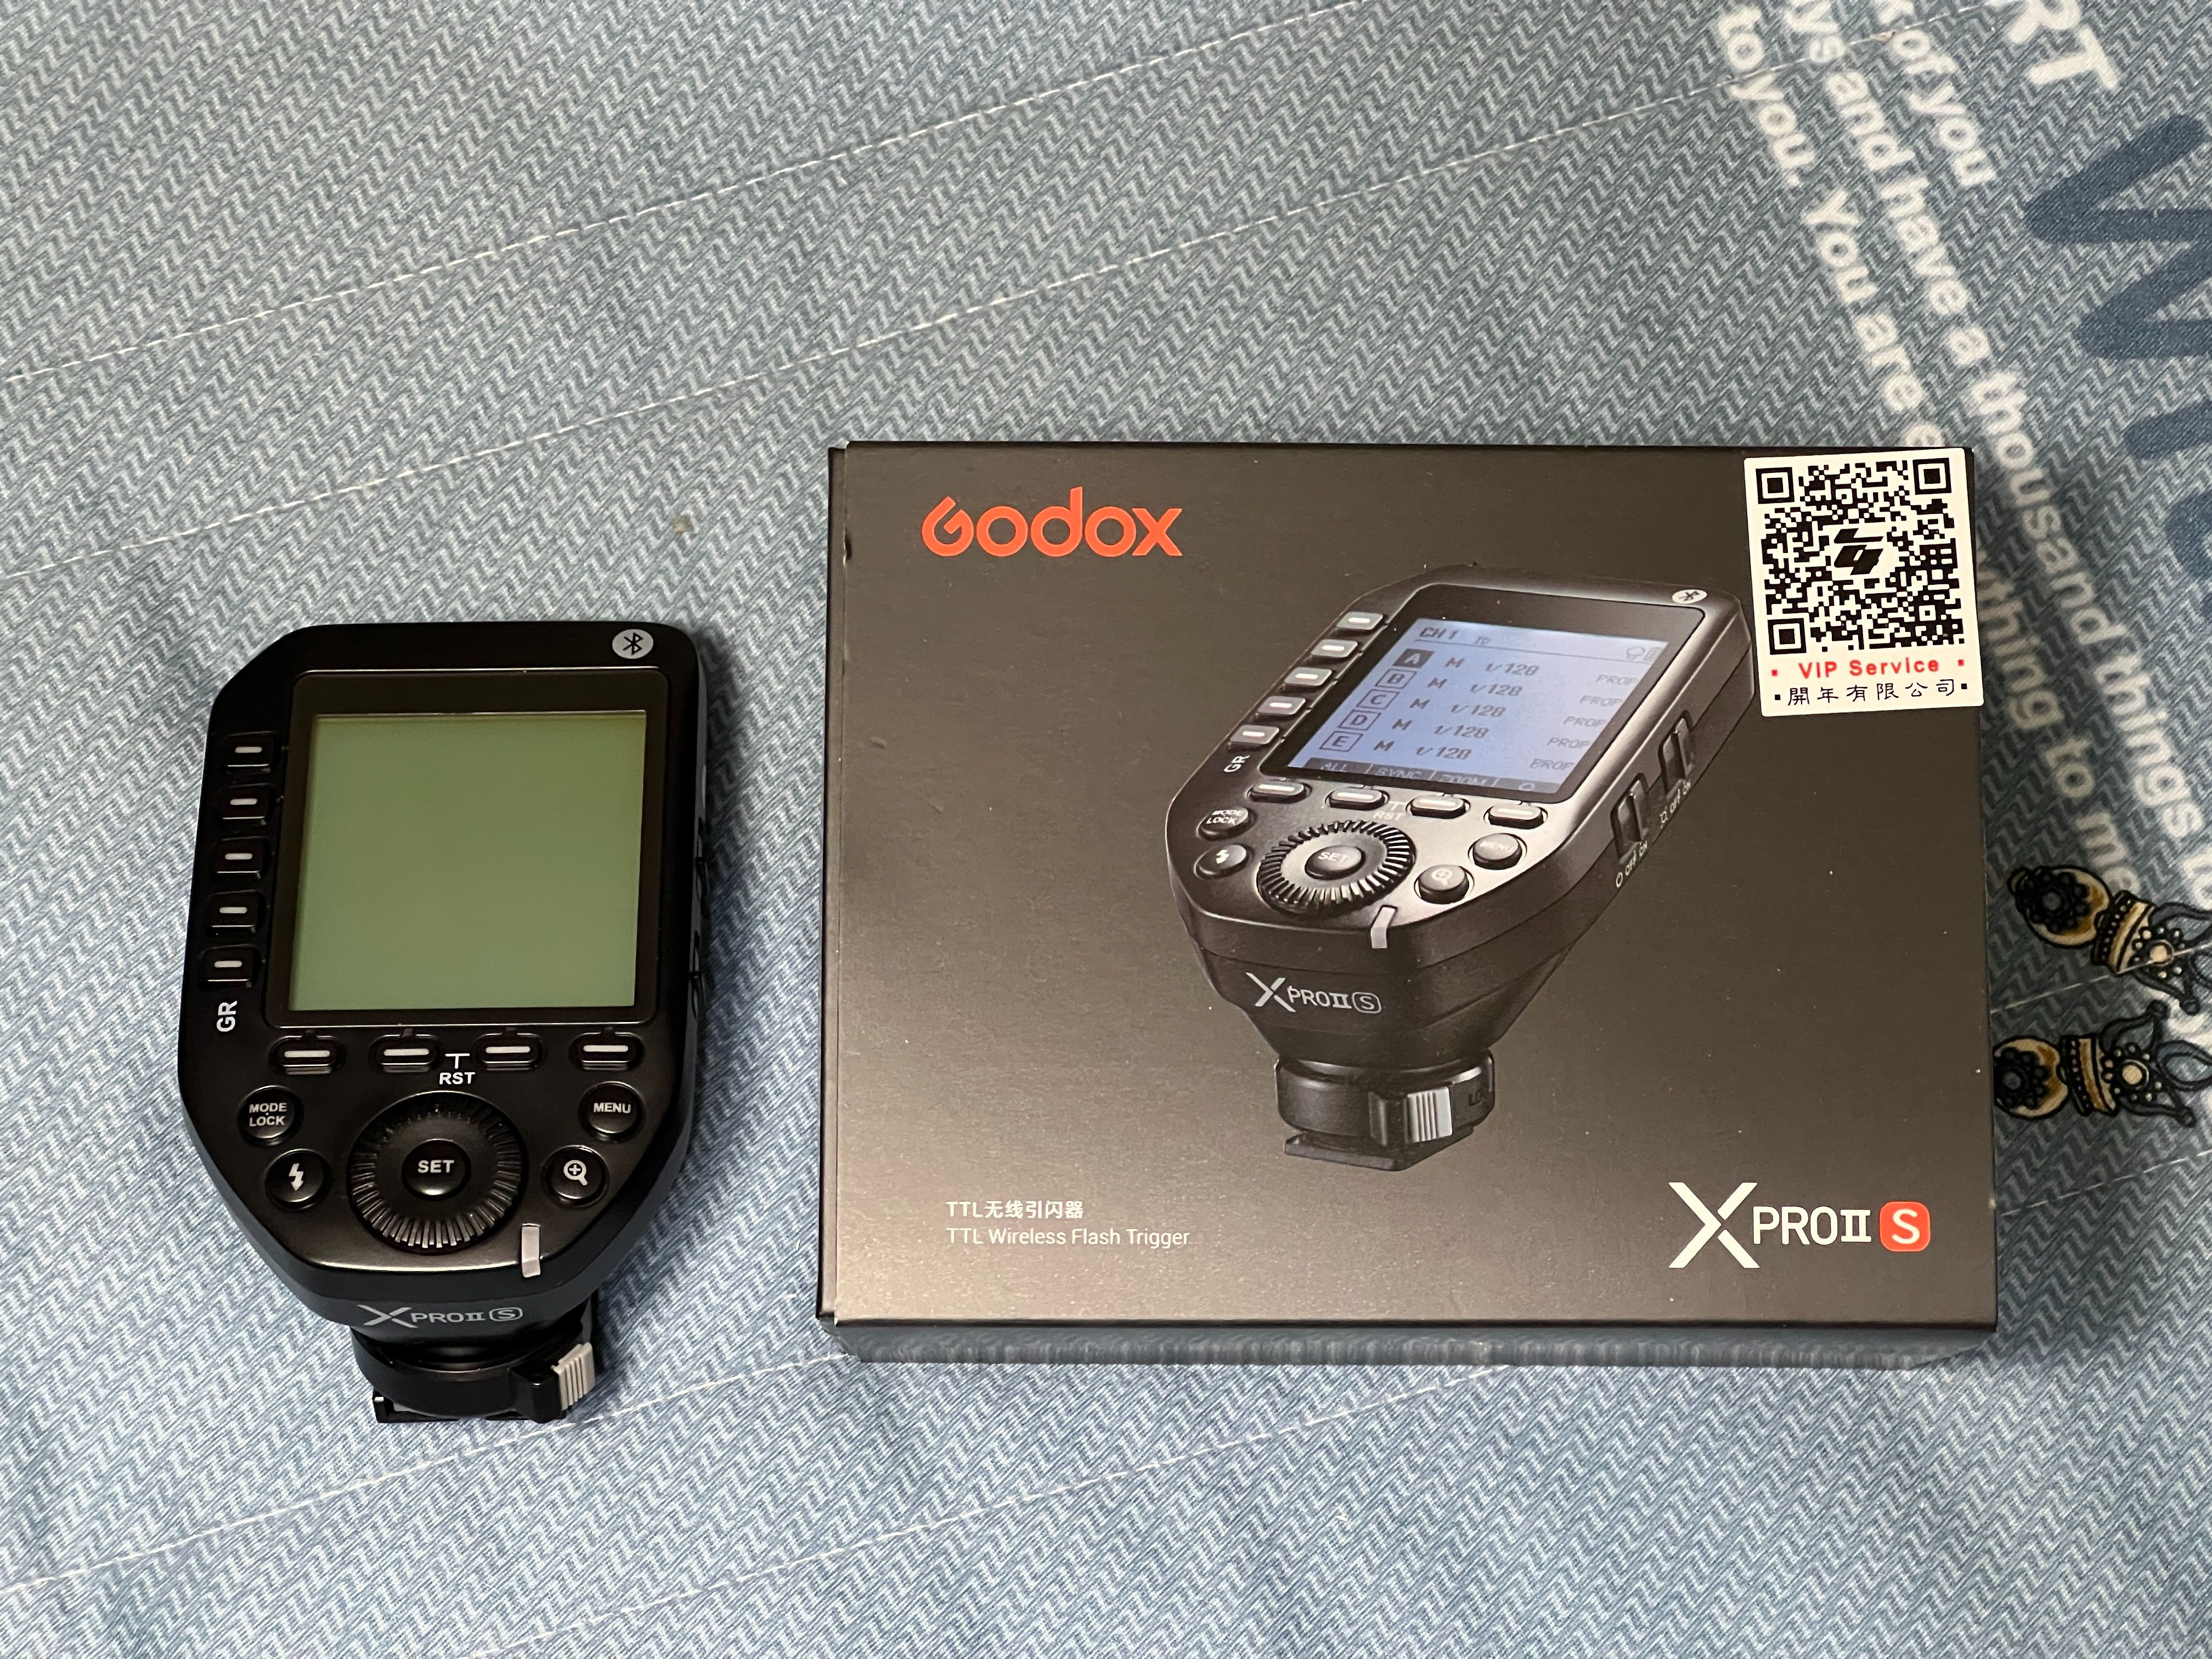 Godox X-proII for Sony